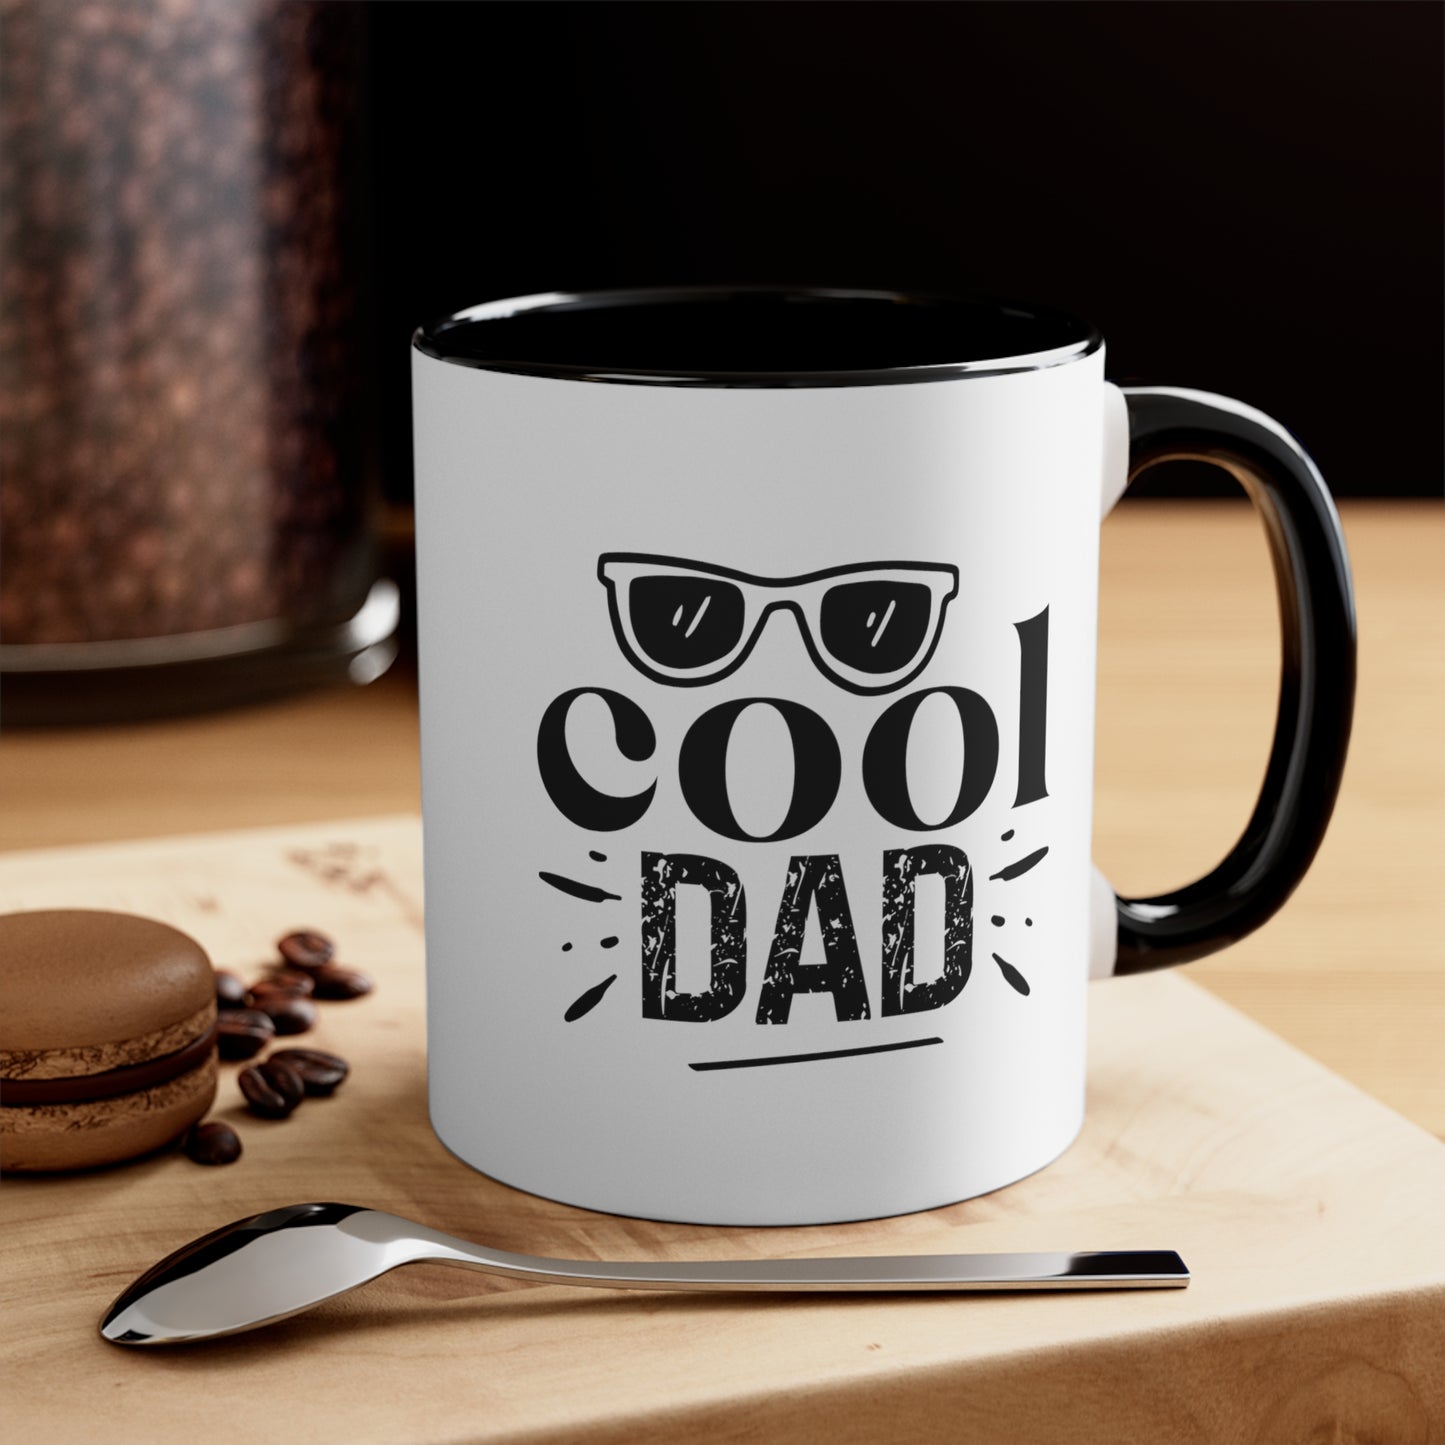 Cool Dad Mug